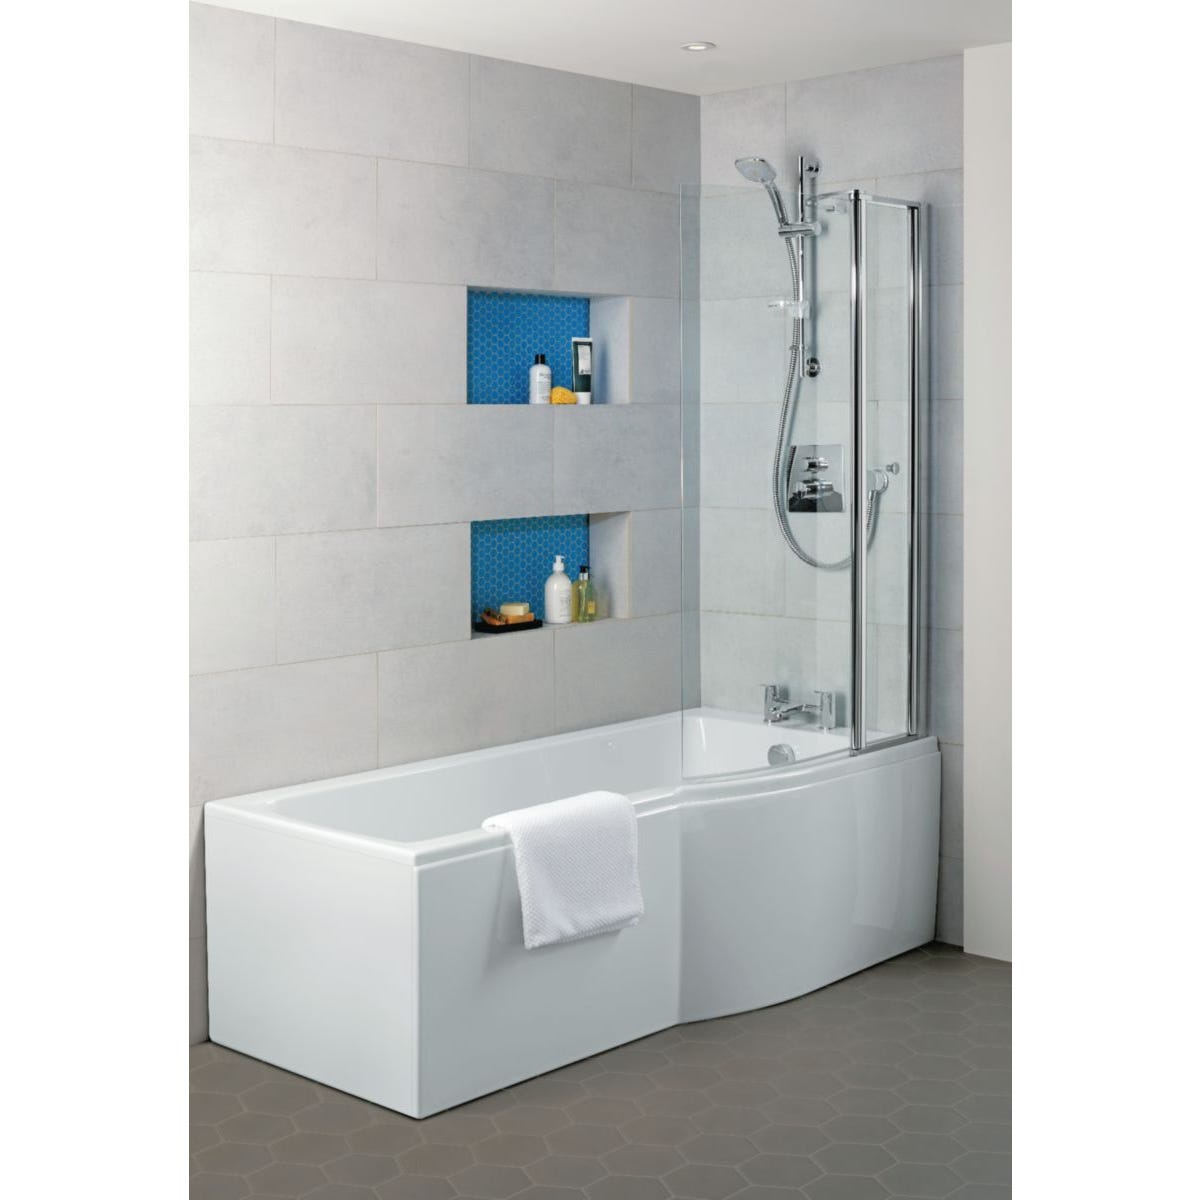 Ideal Standard - Pare-bain courbe avec volet mobile 142 cm verre transparent chromés - Connect Air Ideal standard 4